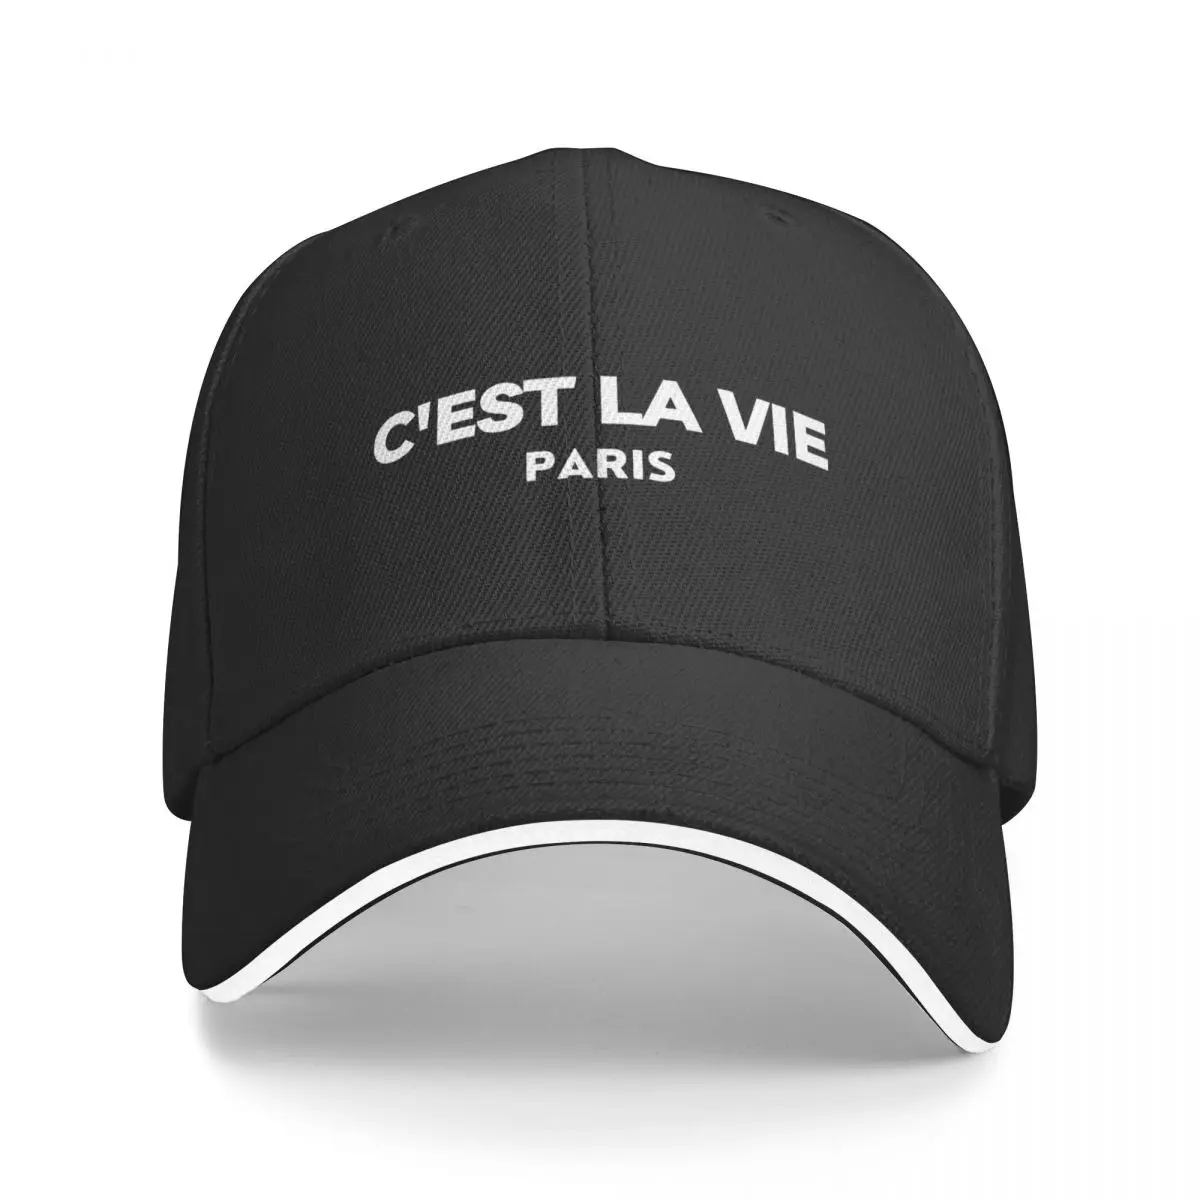 

C'est La Vie Paris - It's Life (White Text) Baseball Cap sun hat summer hat Hats For Women Men's